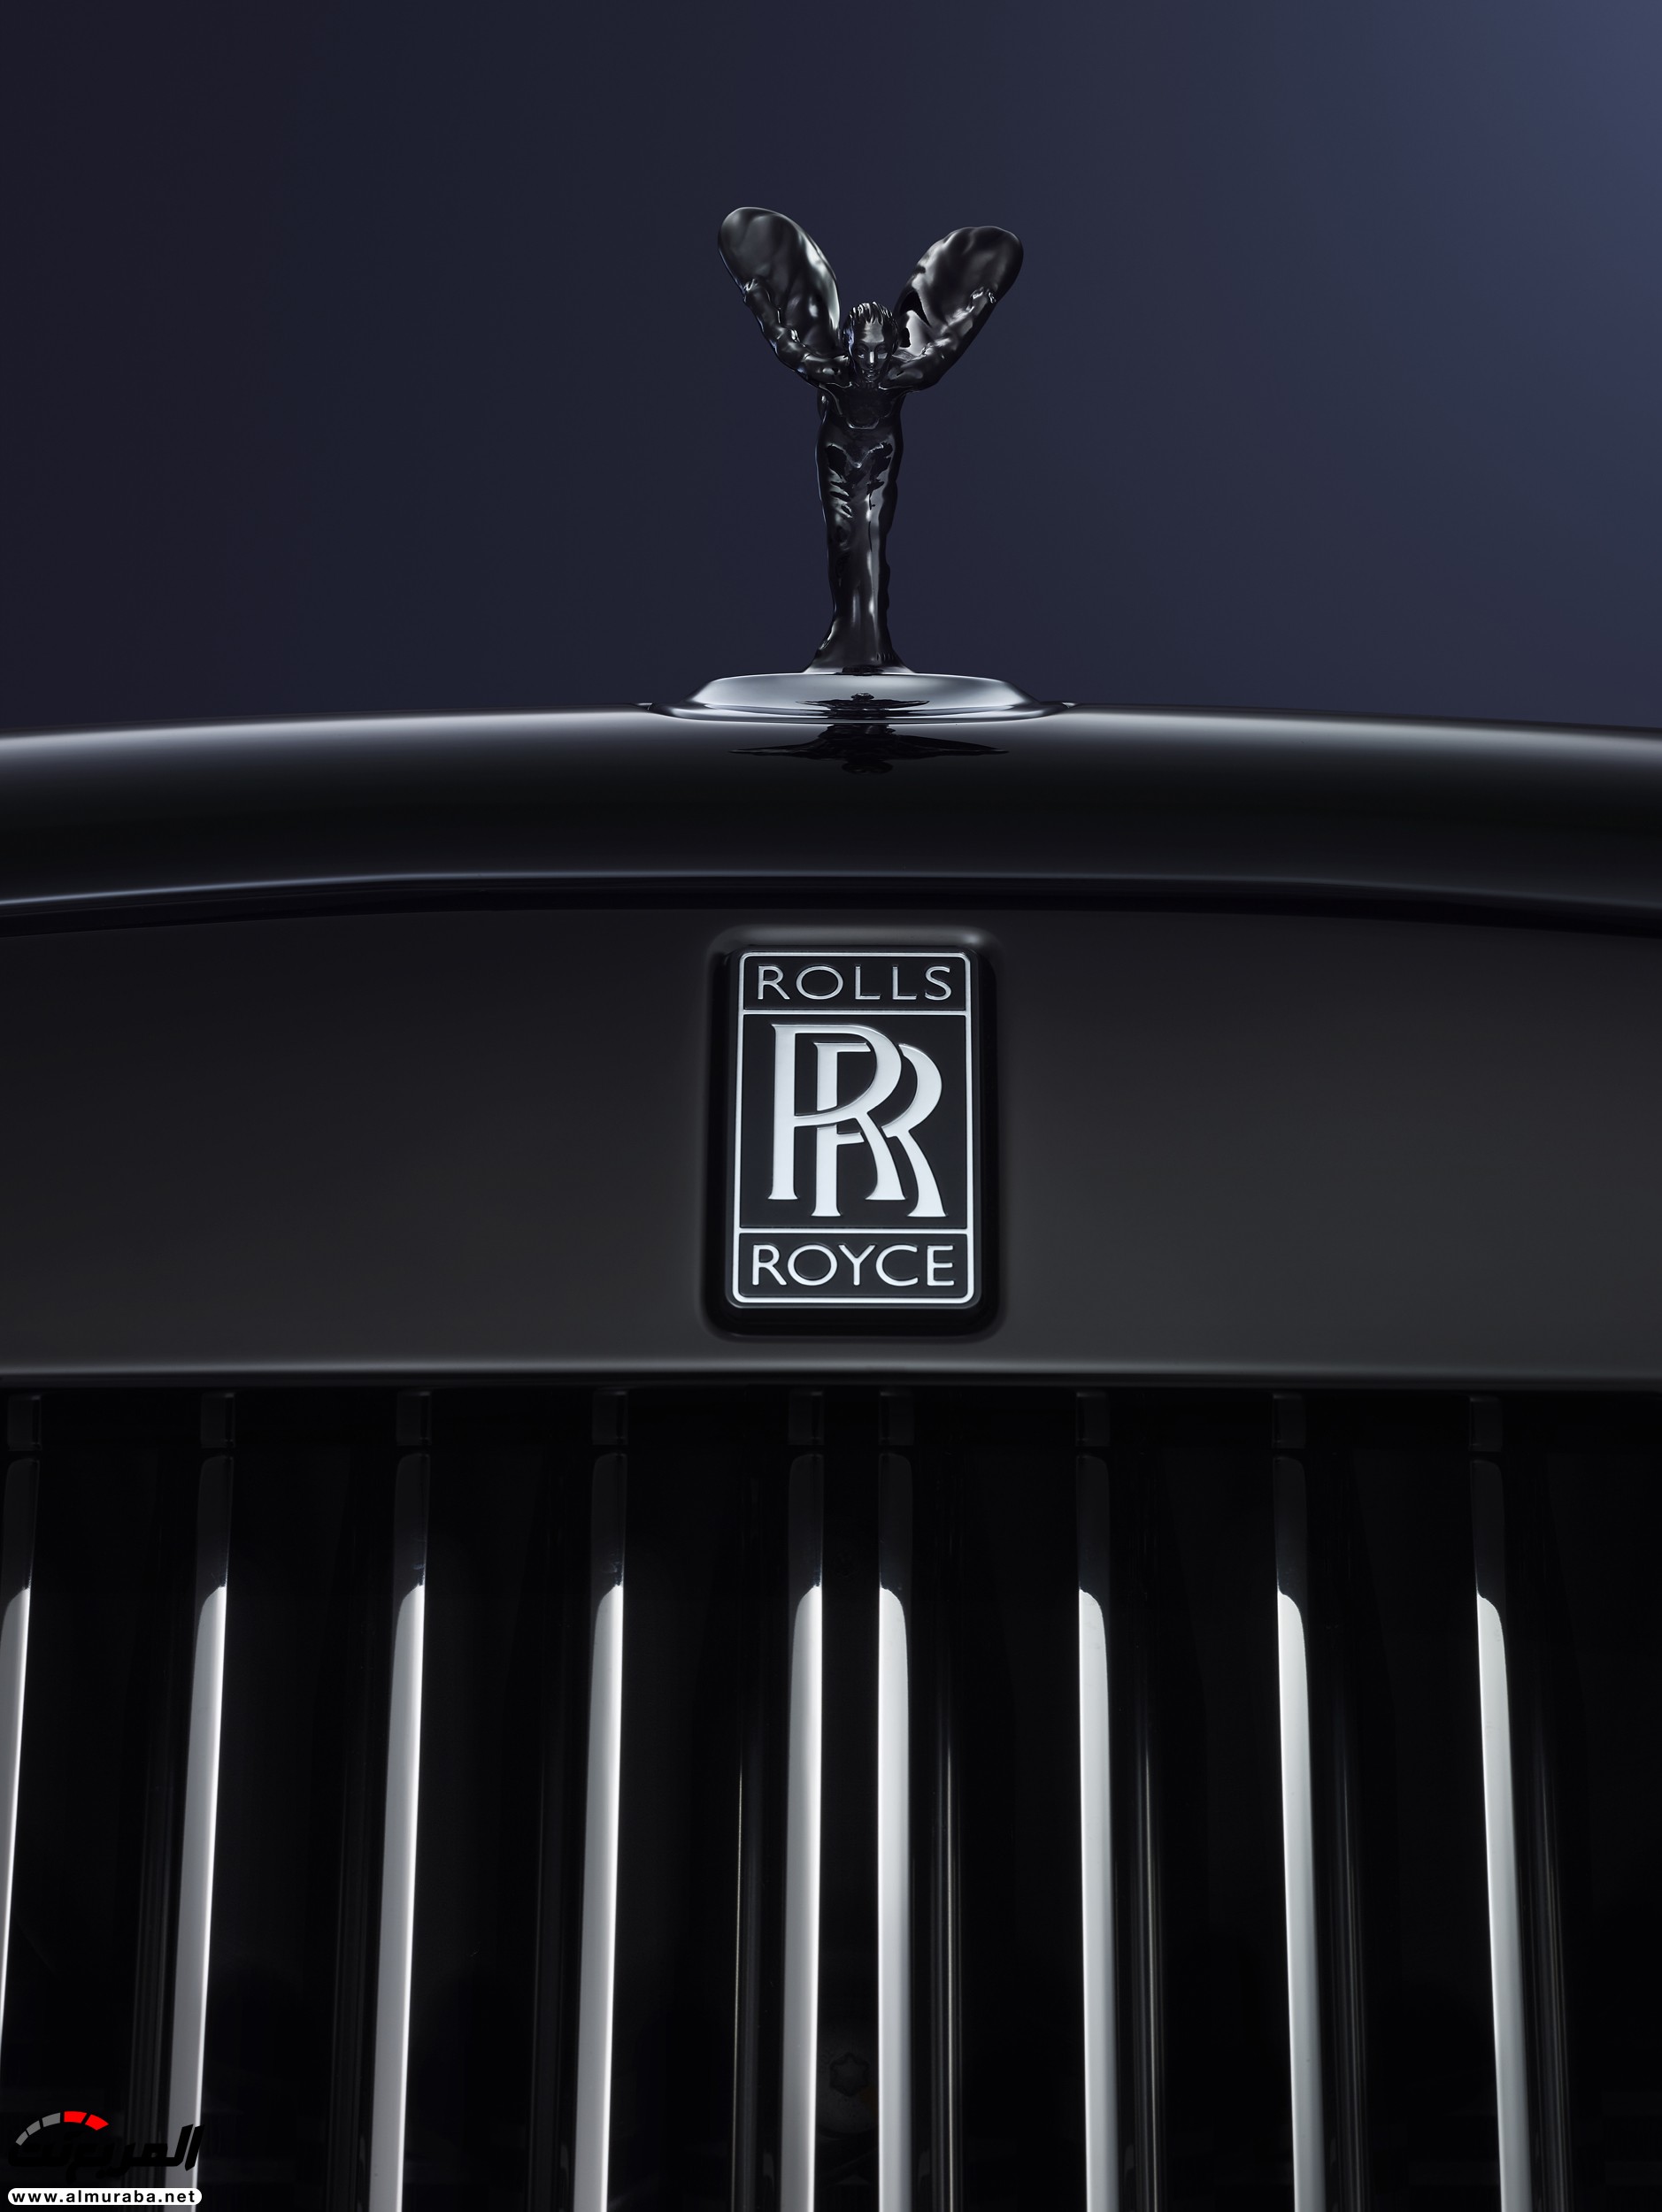 "رولز رويس موتور كارز" يُخلط بينها وبين "رولز رويس plc" المتورطة في فضيحة عالمية Rolls-Royce 1